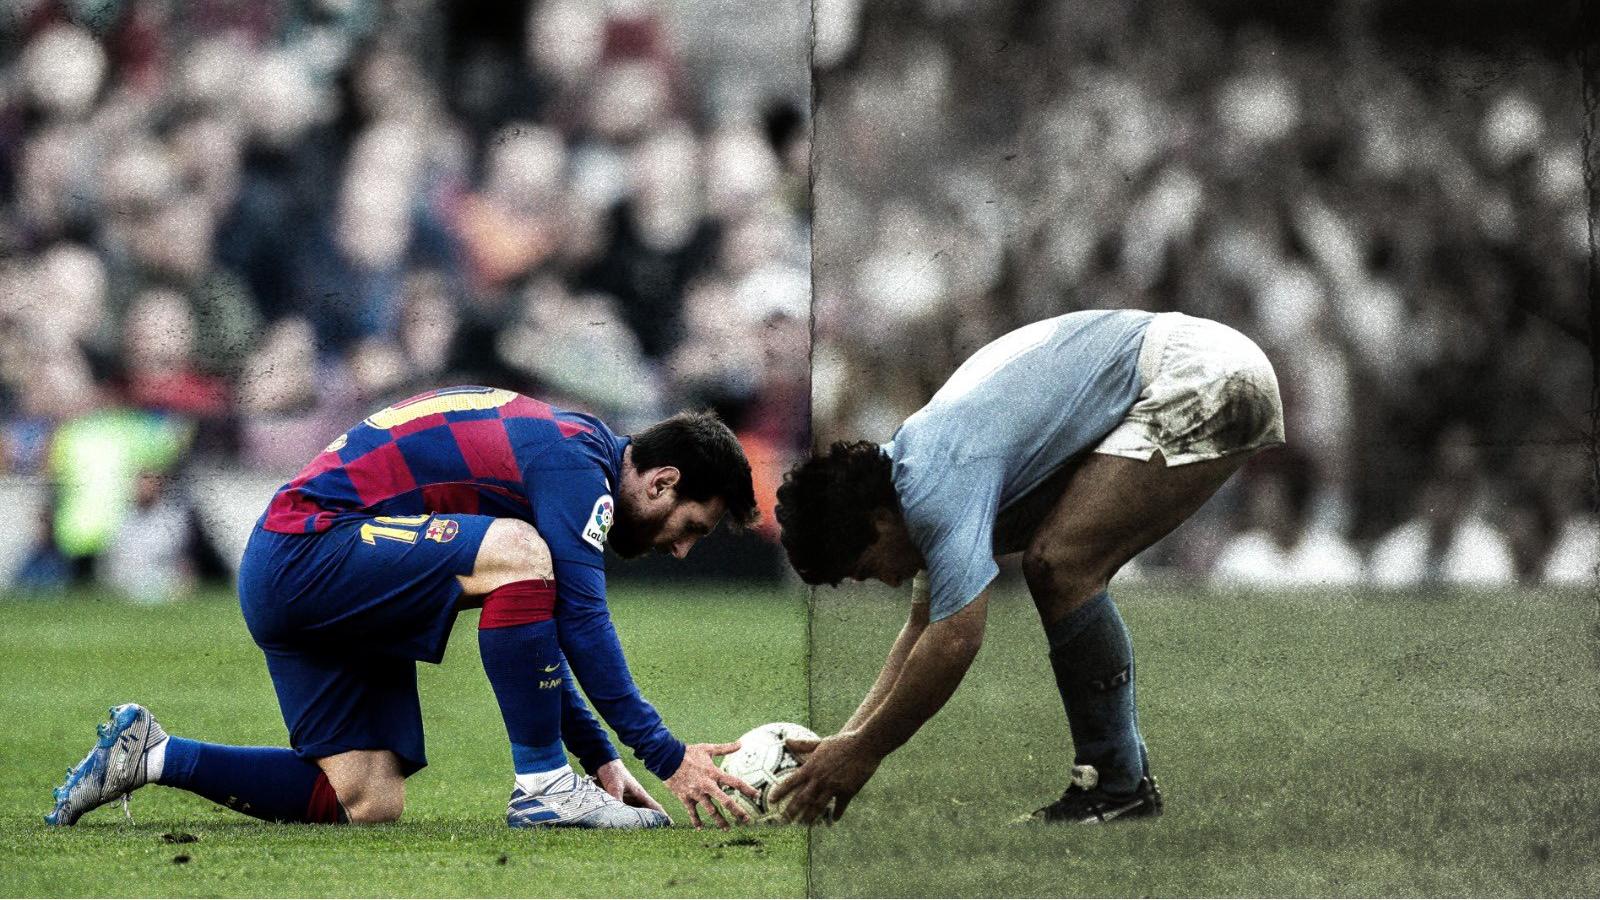 Hình nền Messi Maradona sẽ khiến bạn phấn khích và mê mẩn ngay tức khắc. Trải nghiệm hình ảnh tuyệt đẹp, với những tuyệt tác từ 2 huyền thoại bóng đá này.